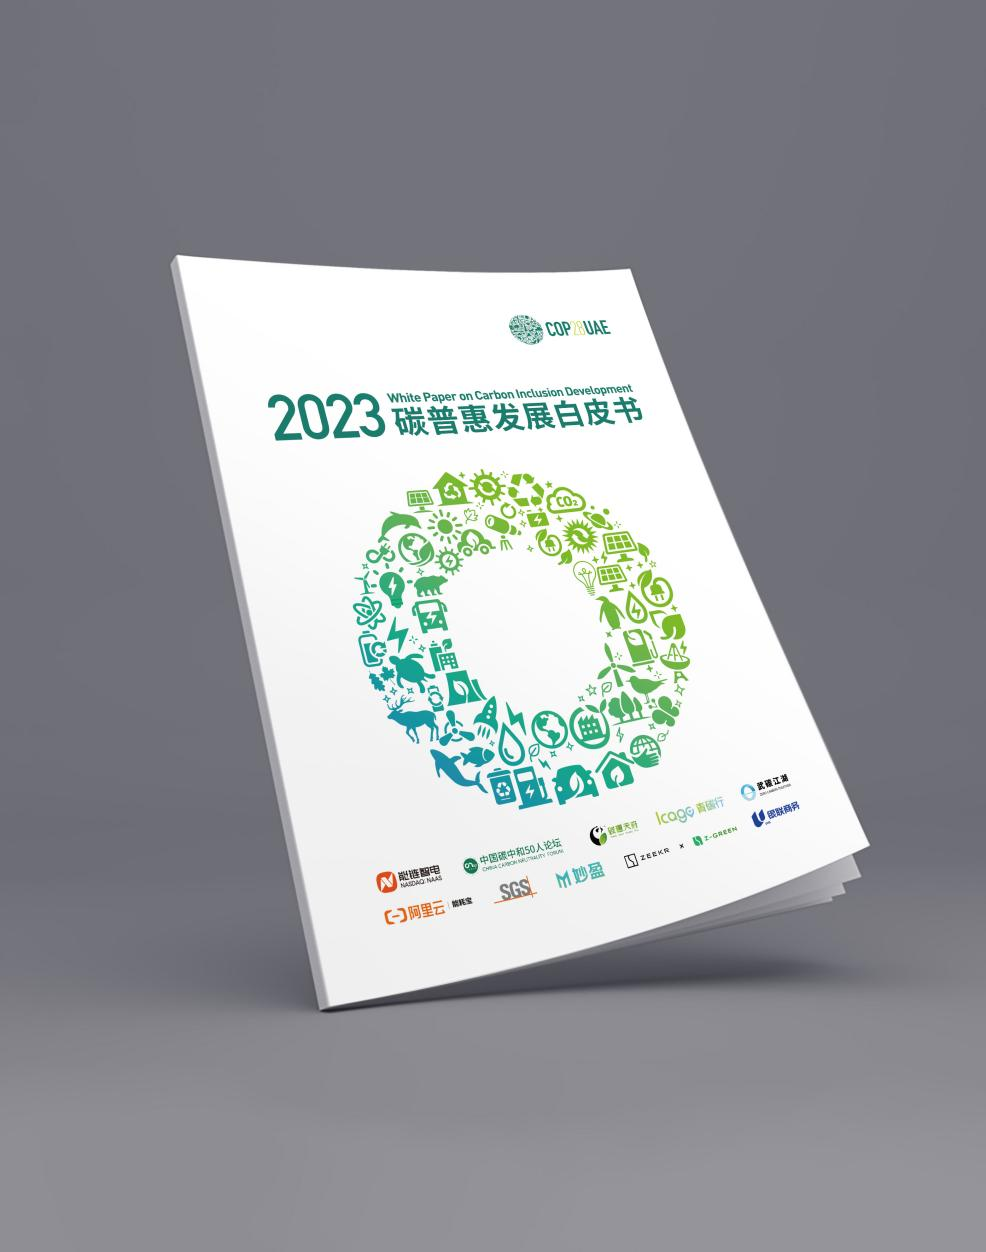 中国碳普惠实践引领全球绿色发展  能链智电发布《2023碳普惠发展白皮书》